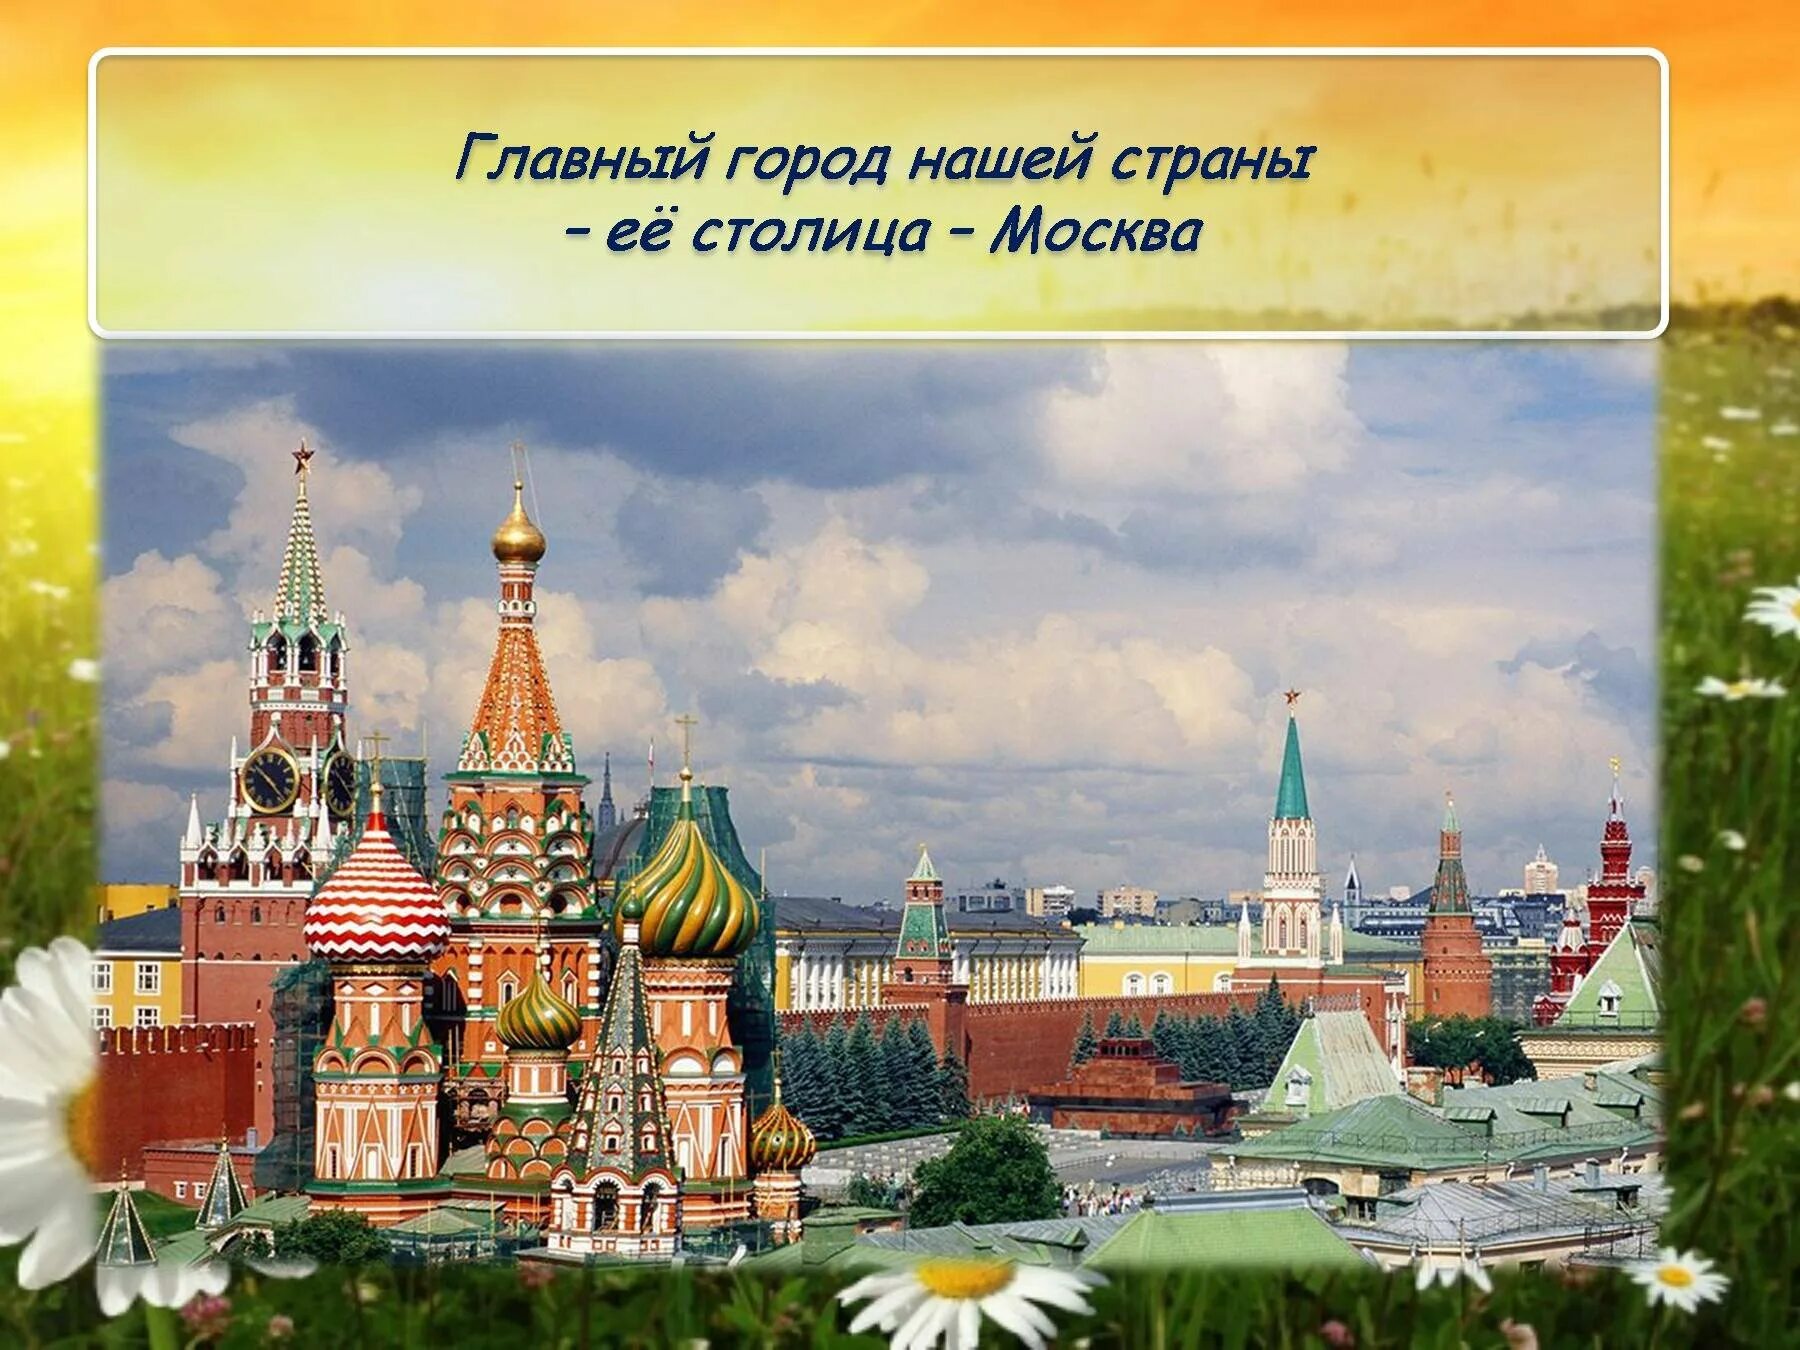 Москва - столица России. Города нашей Родины. Главный город Москва. Москва главный город нашей Родины. Столица главной страны